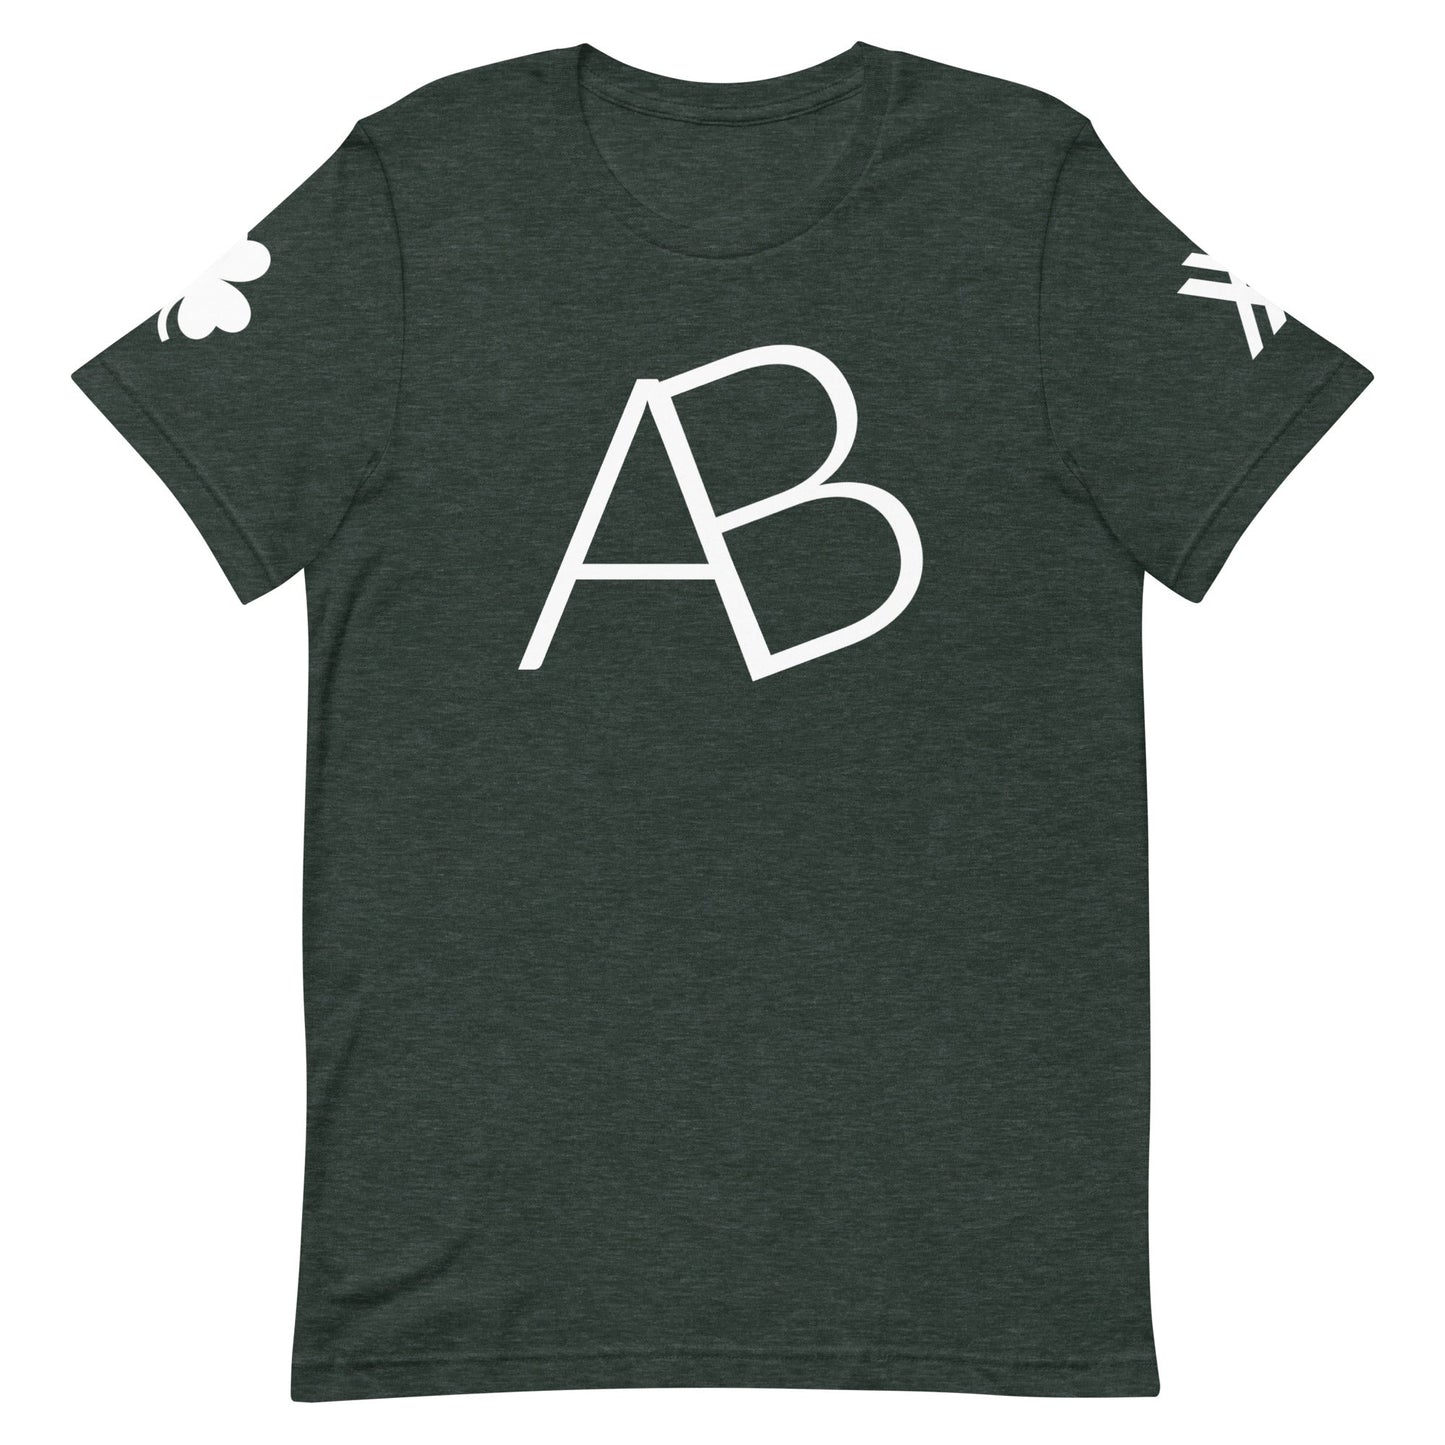 AB's Self Indulgent Short-Sleeve Unisex T-Shirt